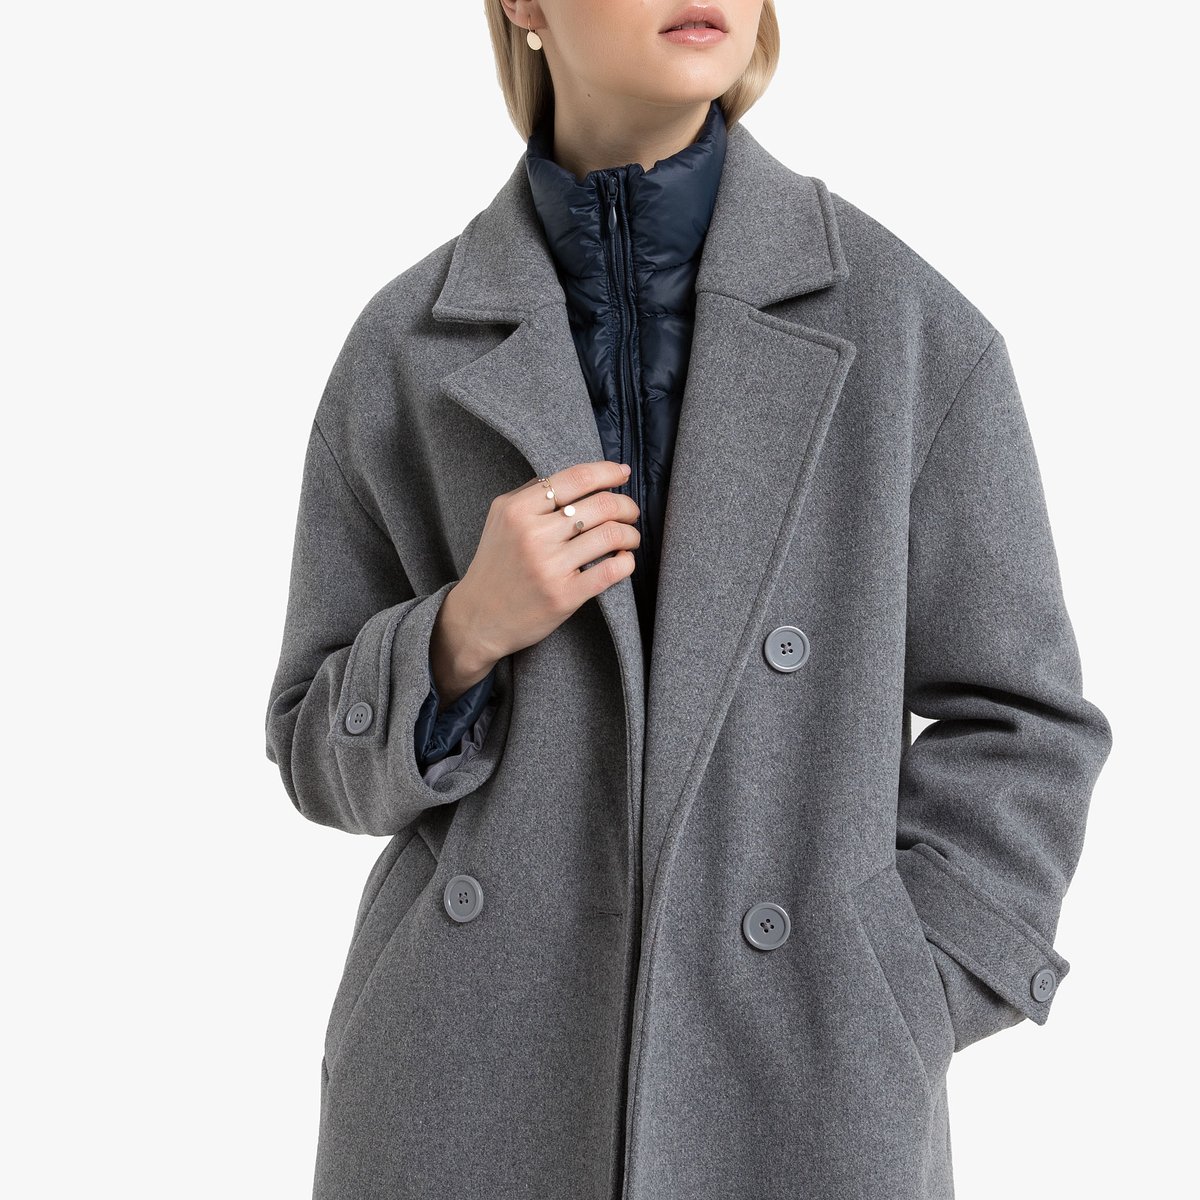 Пальто La Redoute La Redoute 44 (FR) - 50 (RUS) серый, размер 44 (FR) - 50 (RUS) La Redoute 44 (FR) - 50 (RUS) серый - фото 2